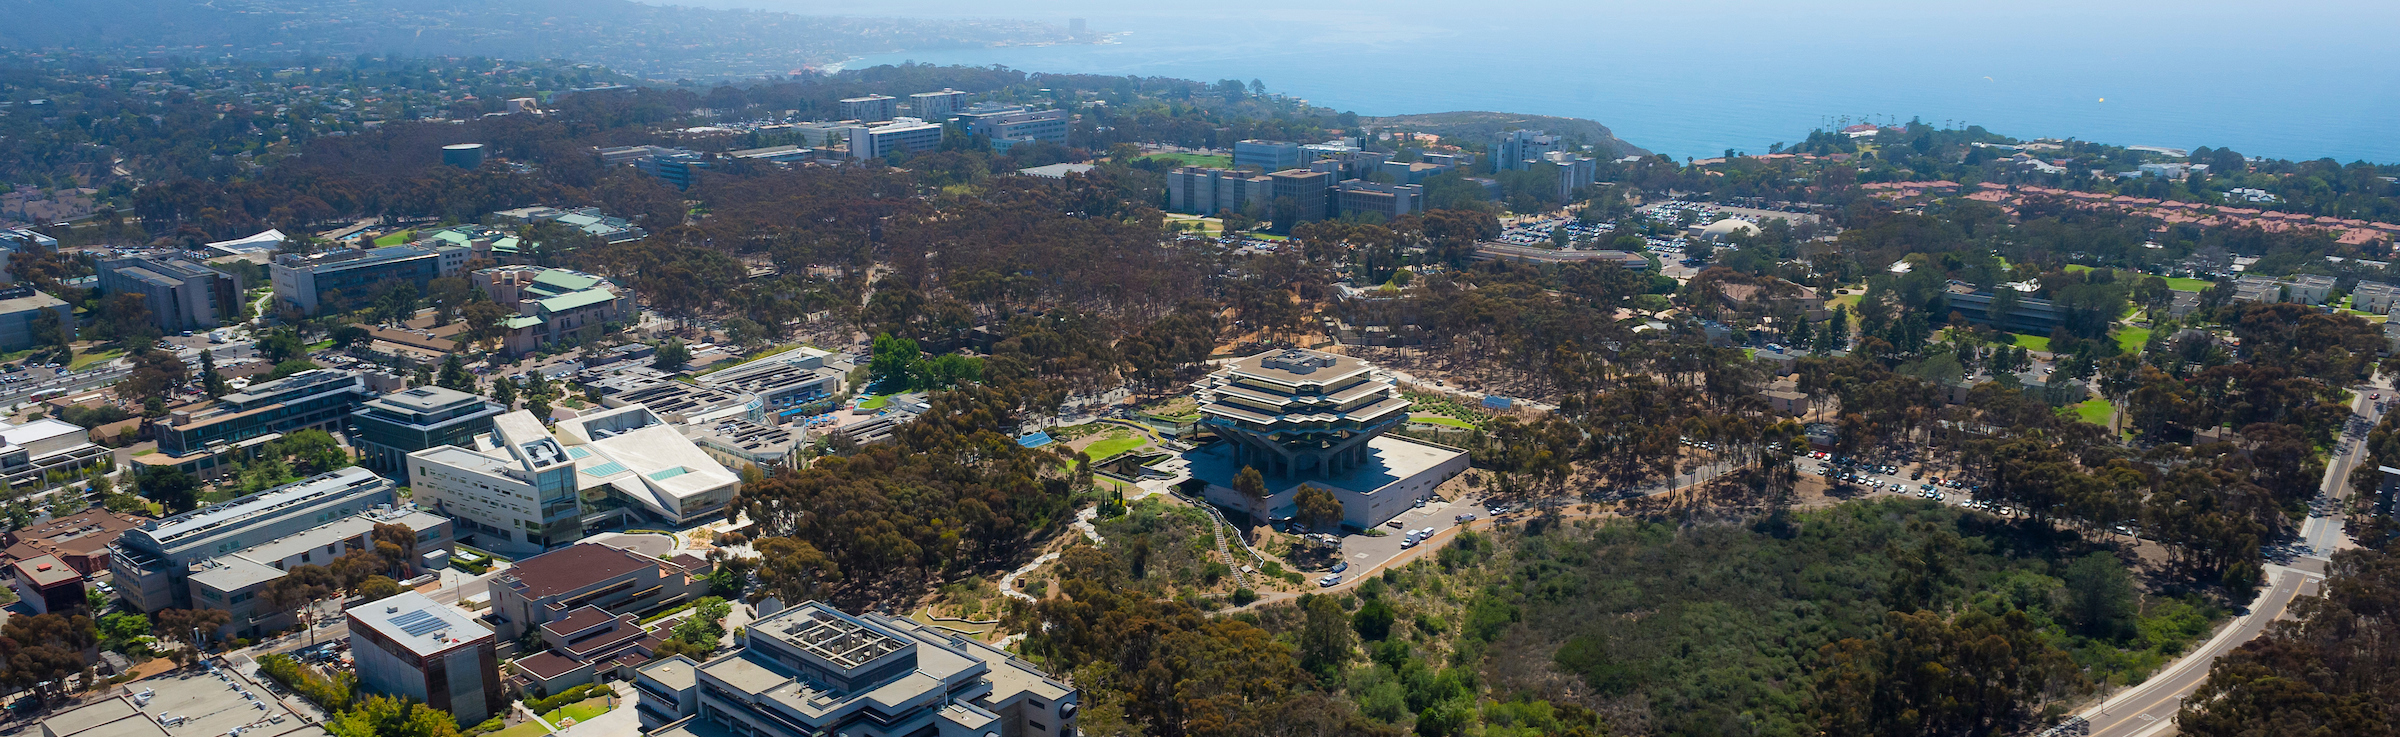 Aerial photo of campus